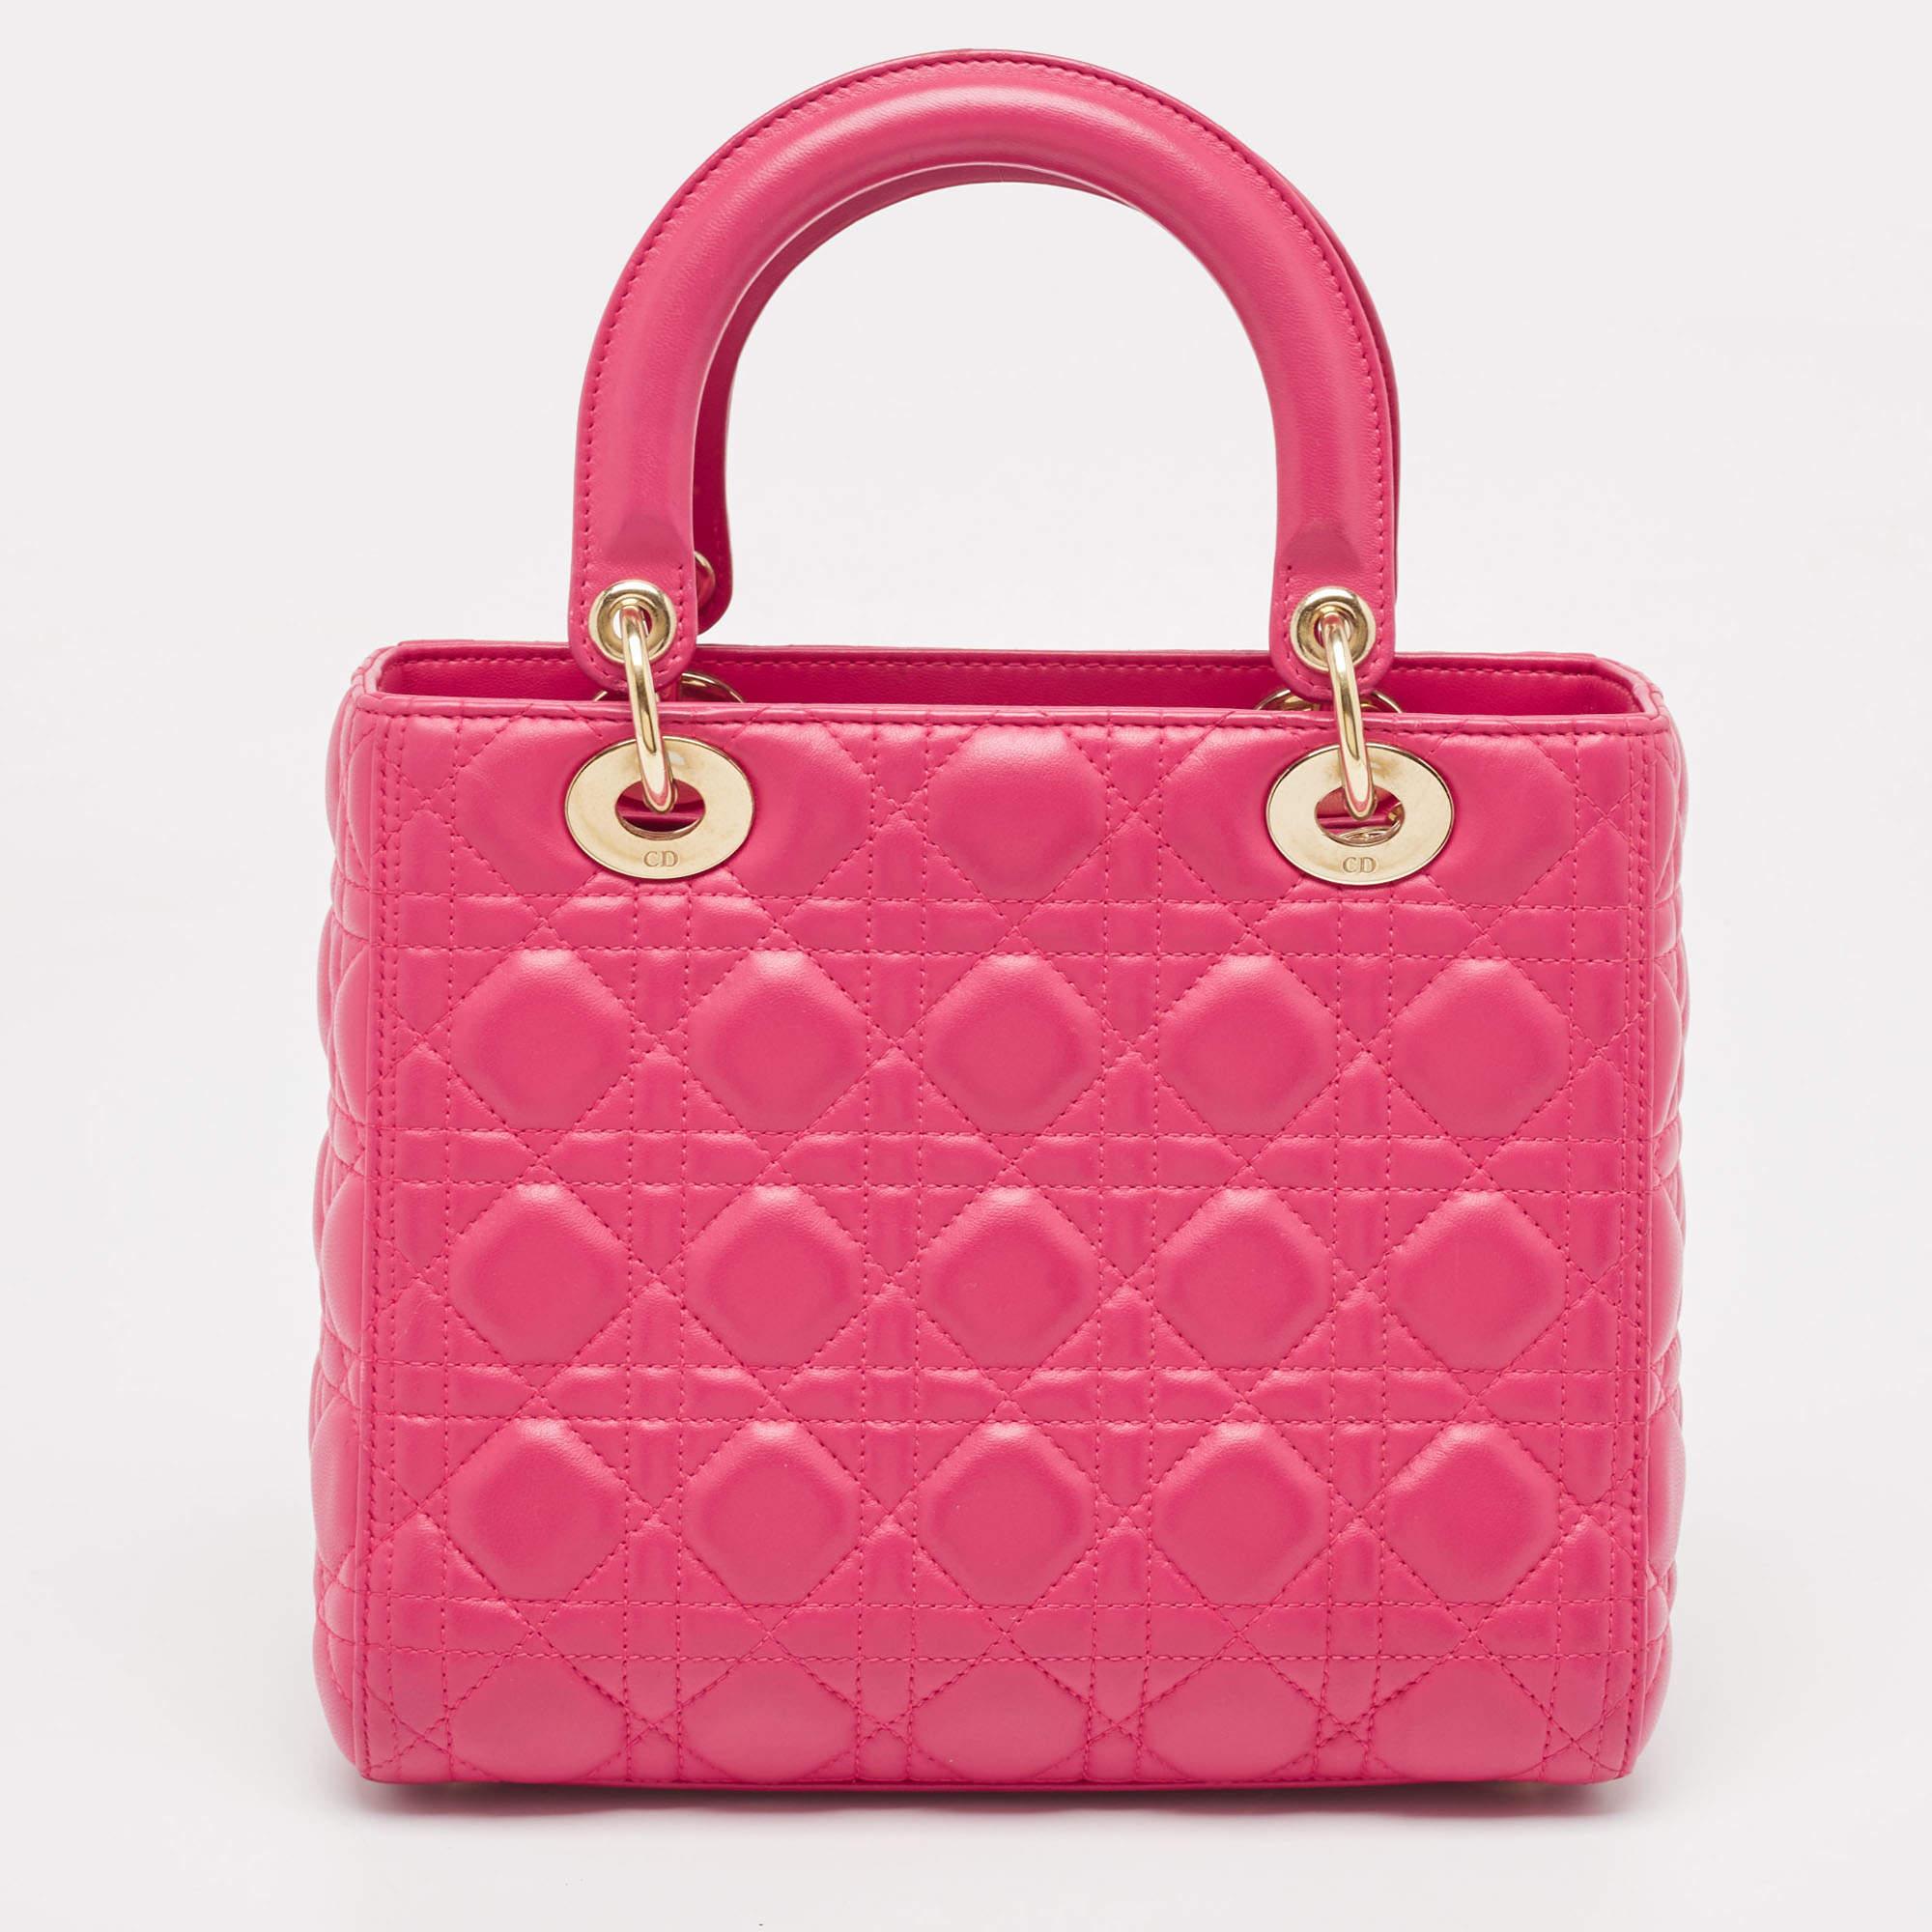 Mit dieser rosafarbenen Tasche von Lady Dior haben Sie alles Wichtige für den Tag dabei und Ihr Outfit ist komplett. Die aus den besten MATERIALEN gefertigte Tasche trägt die Handschrift der Maison Maison für kunstvolle Handwerkskunst und dauerhafte